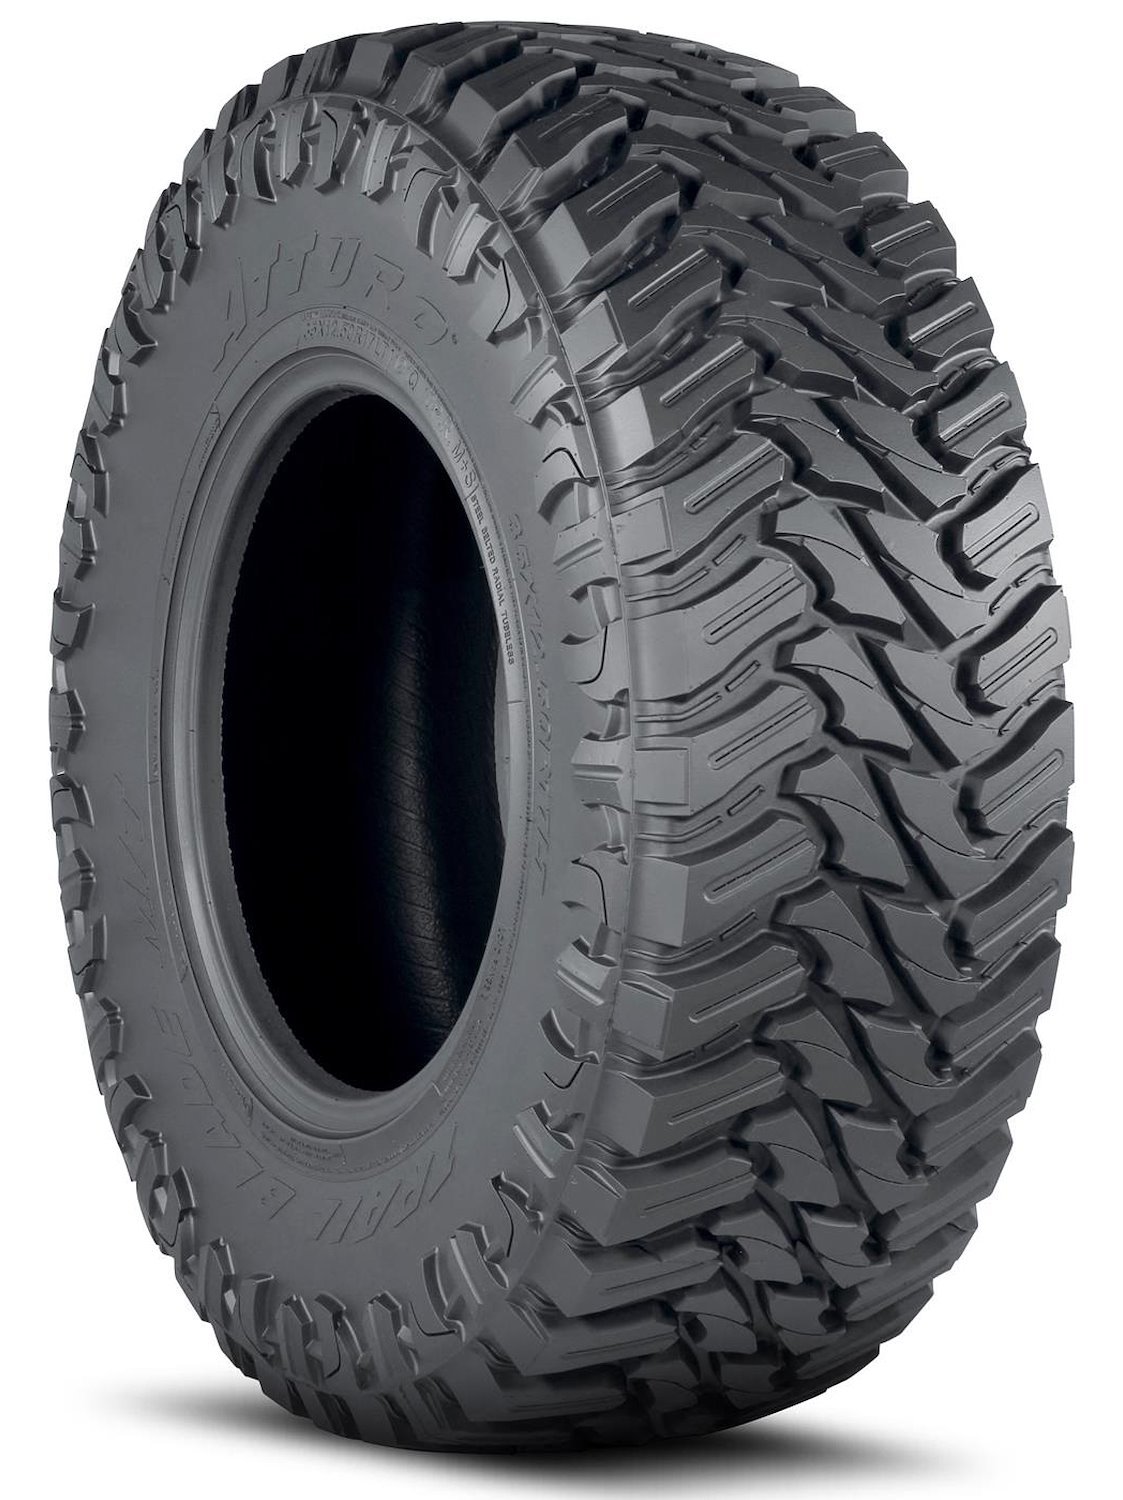 TBMT-LH5M2MA Trail Blade M/T Tire, 33x12.50R18LT